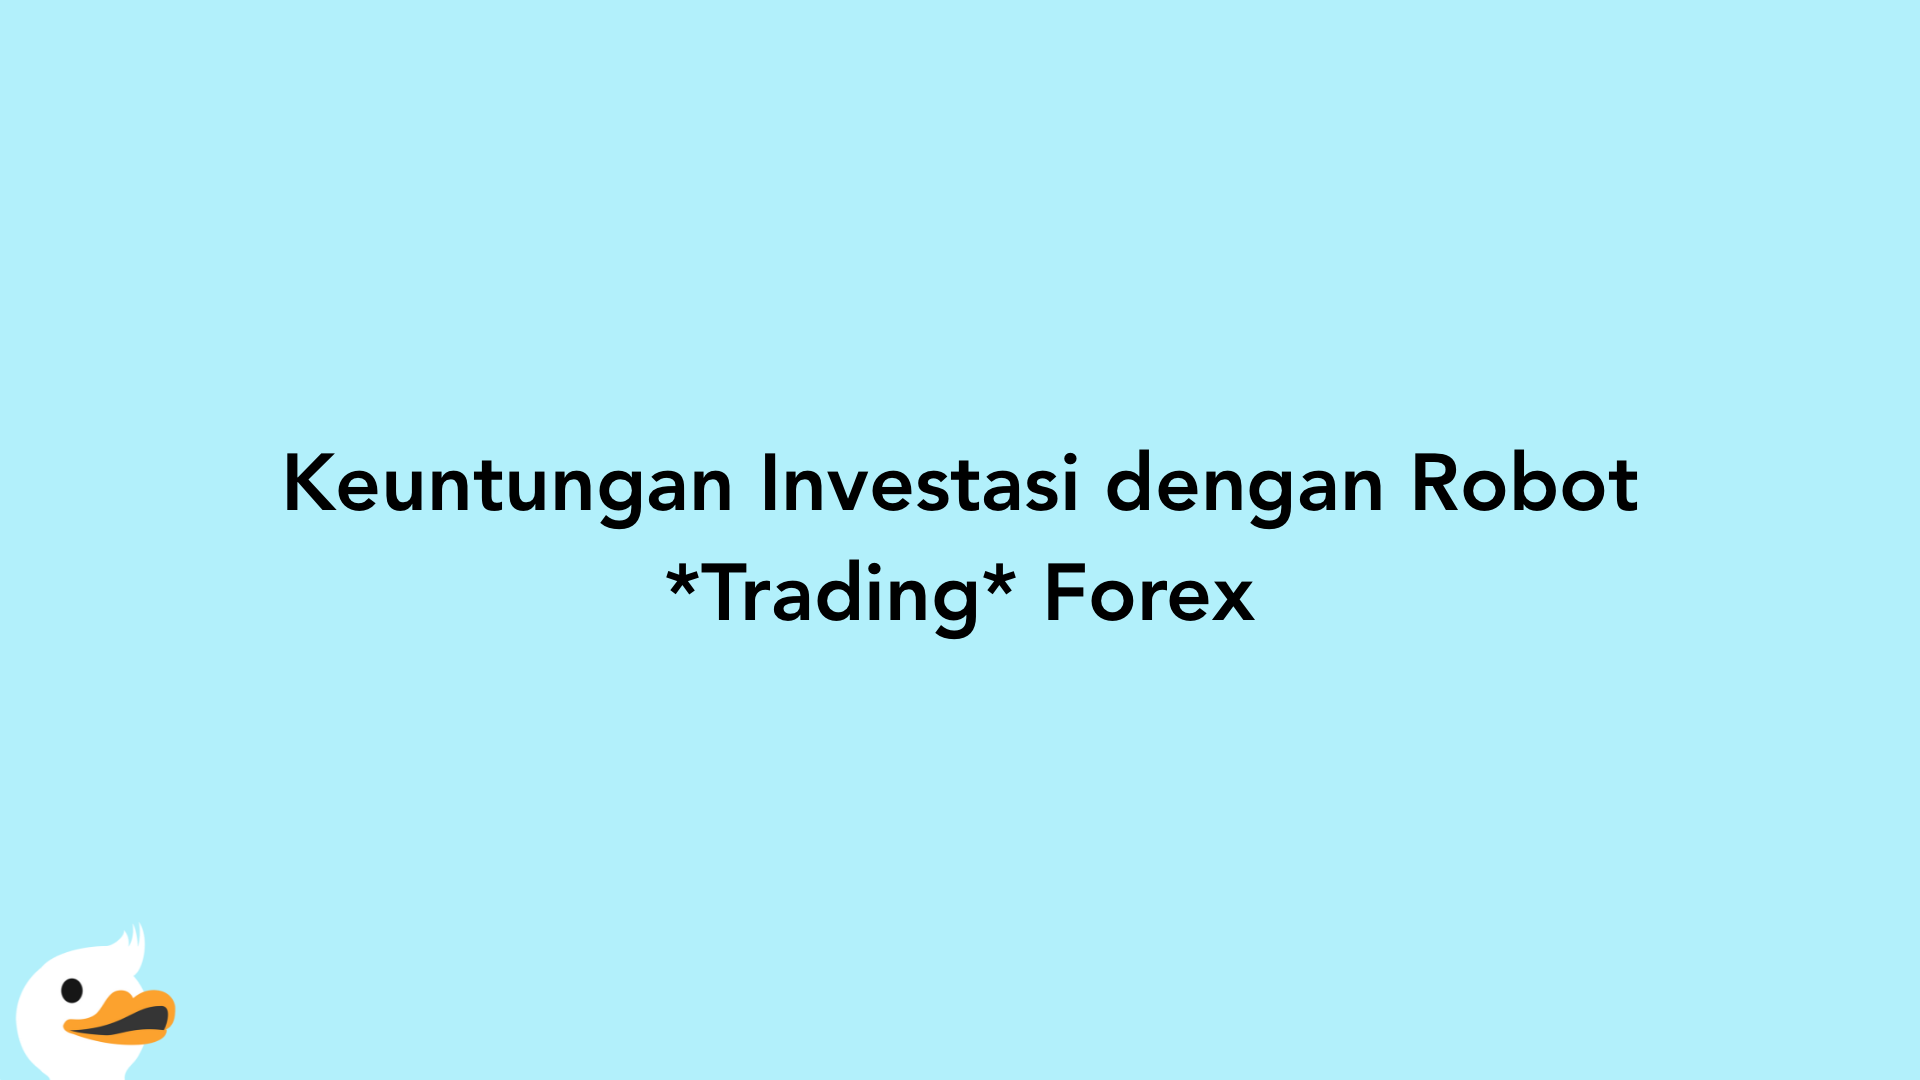 Keuntungan Investasi dengan Robot Trading Forex